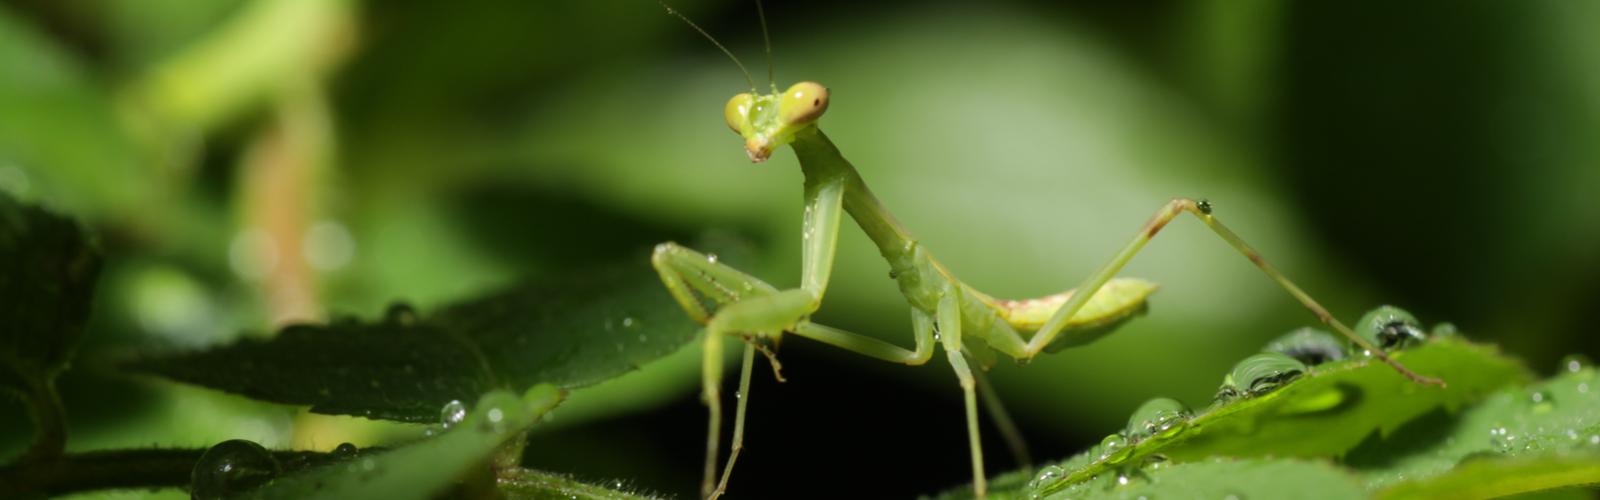 La mantis religiosa, un aliado sorprendente en el control biológico plagas - LaMota GrowShop